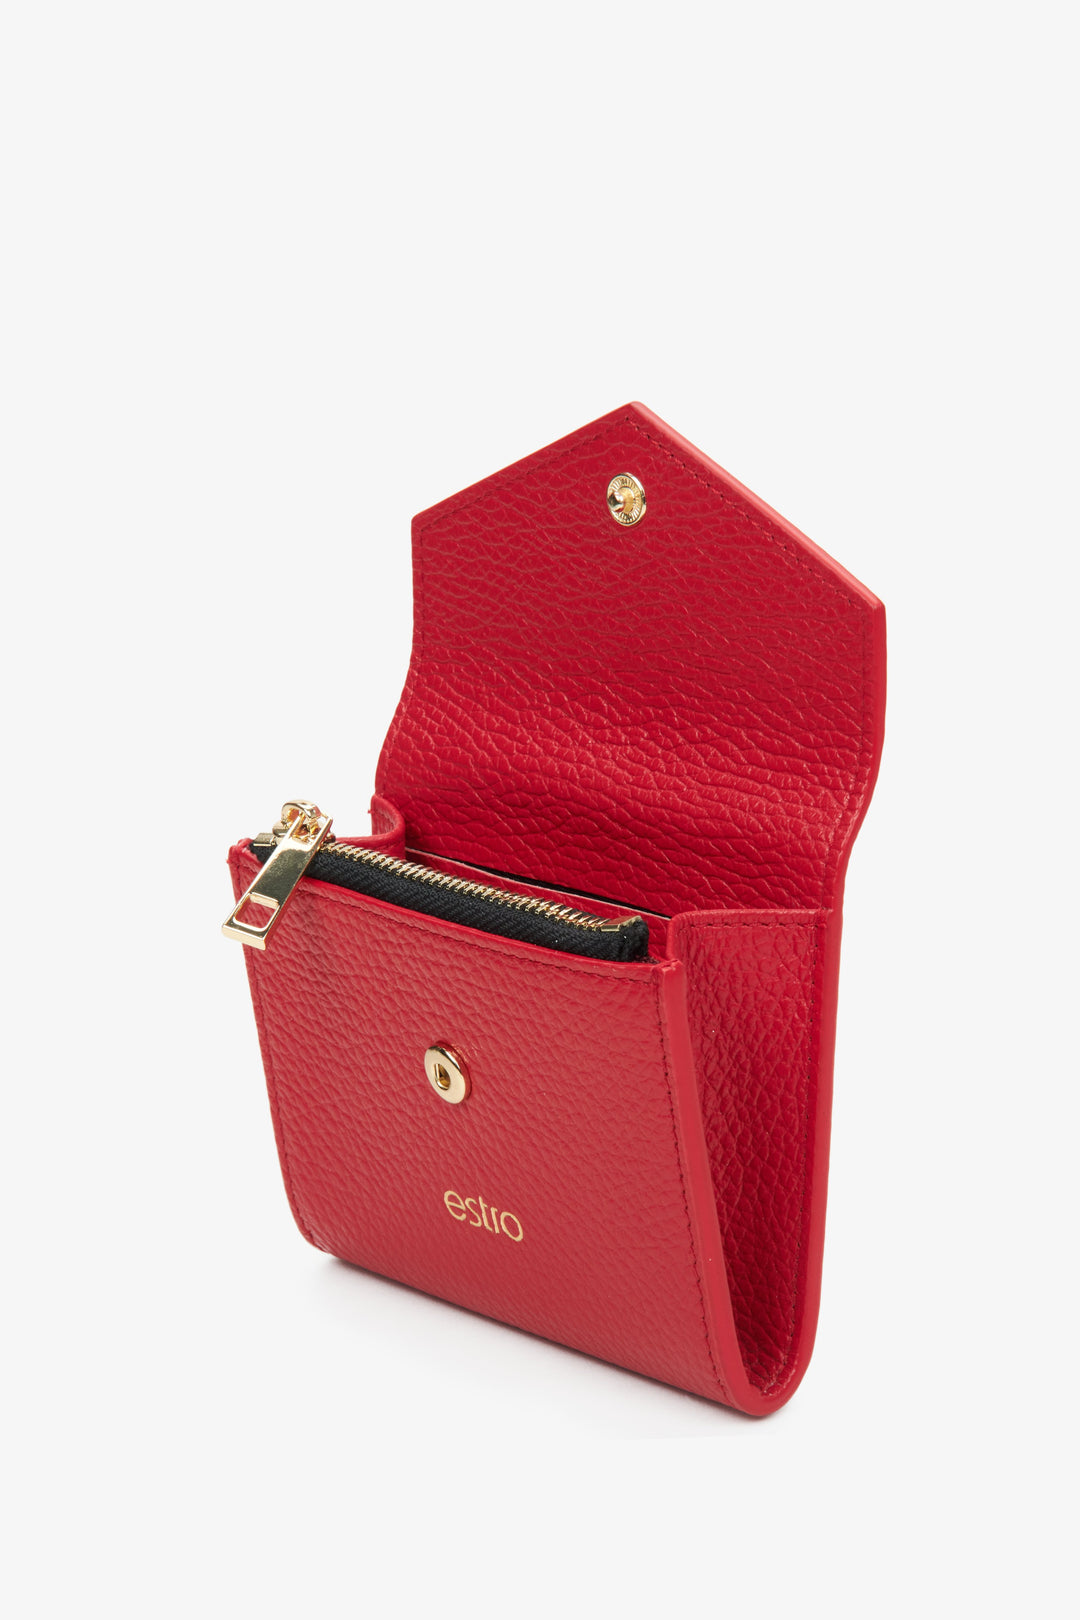 Czerwony skórzany portfel damski Estro - prezentacja modelu po otwarciu.